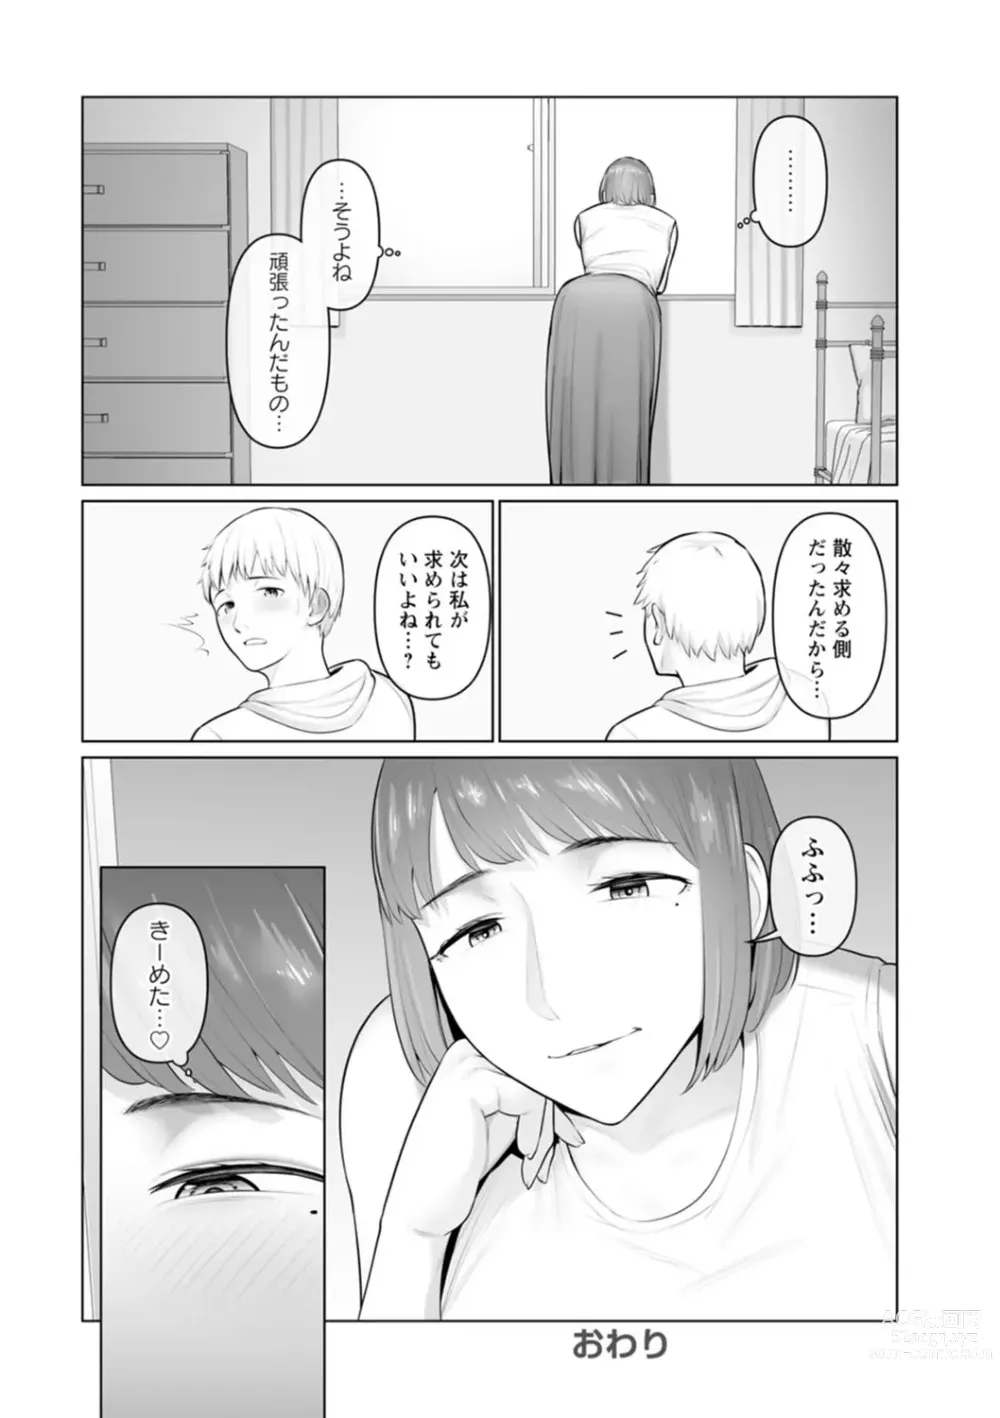 Page 205 of manga Sugao no kimi o okashitai